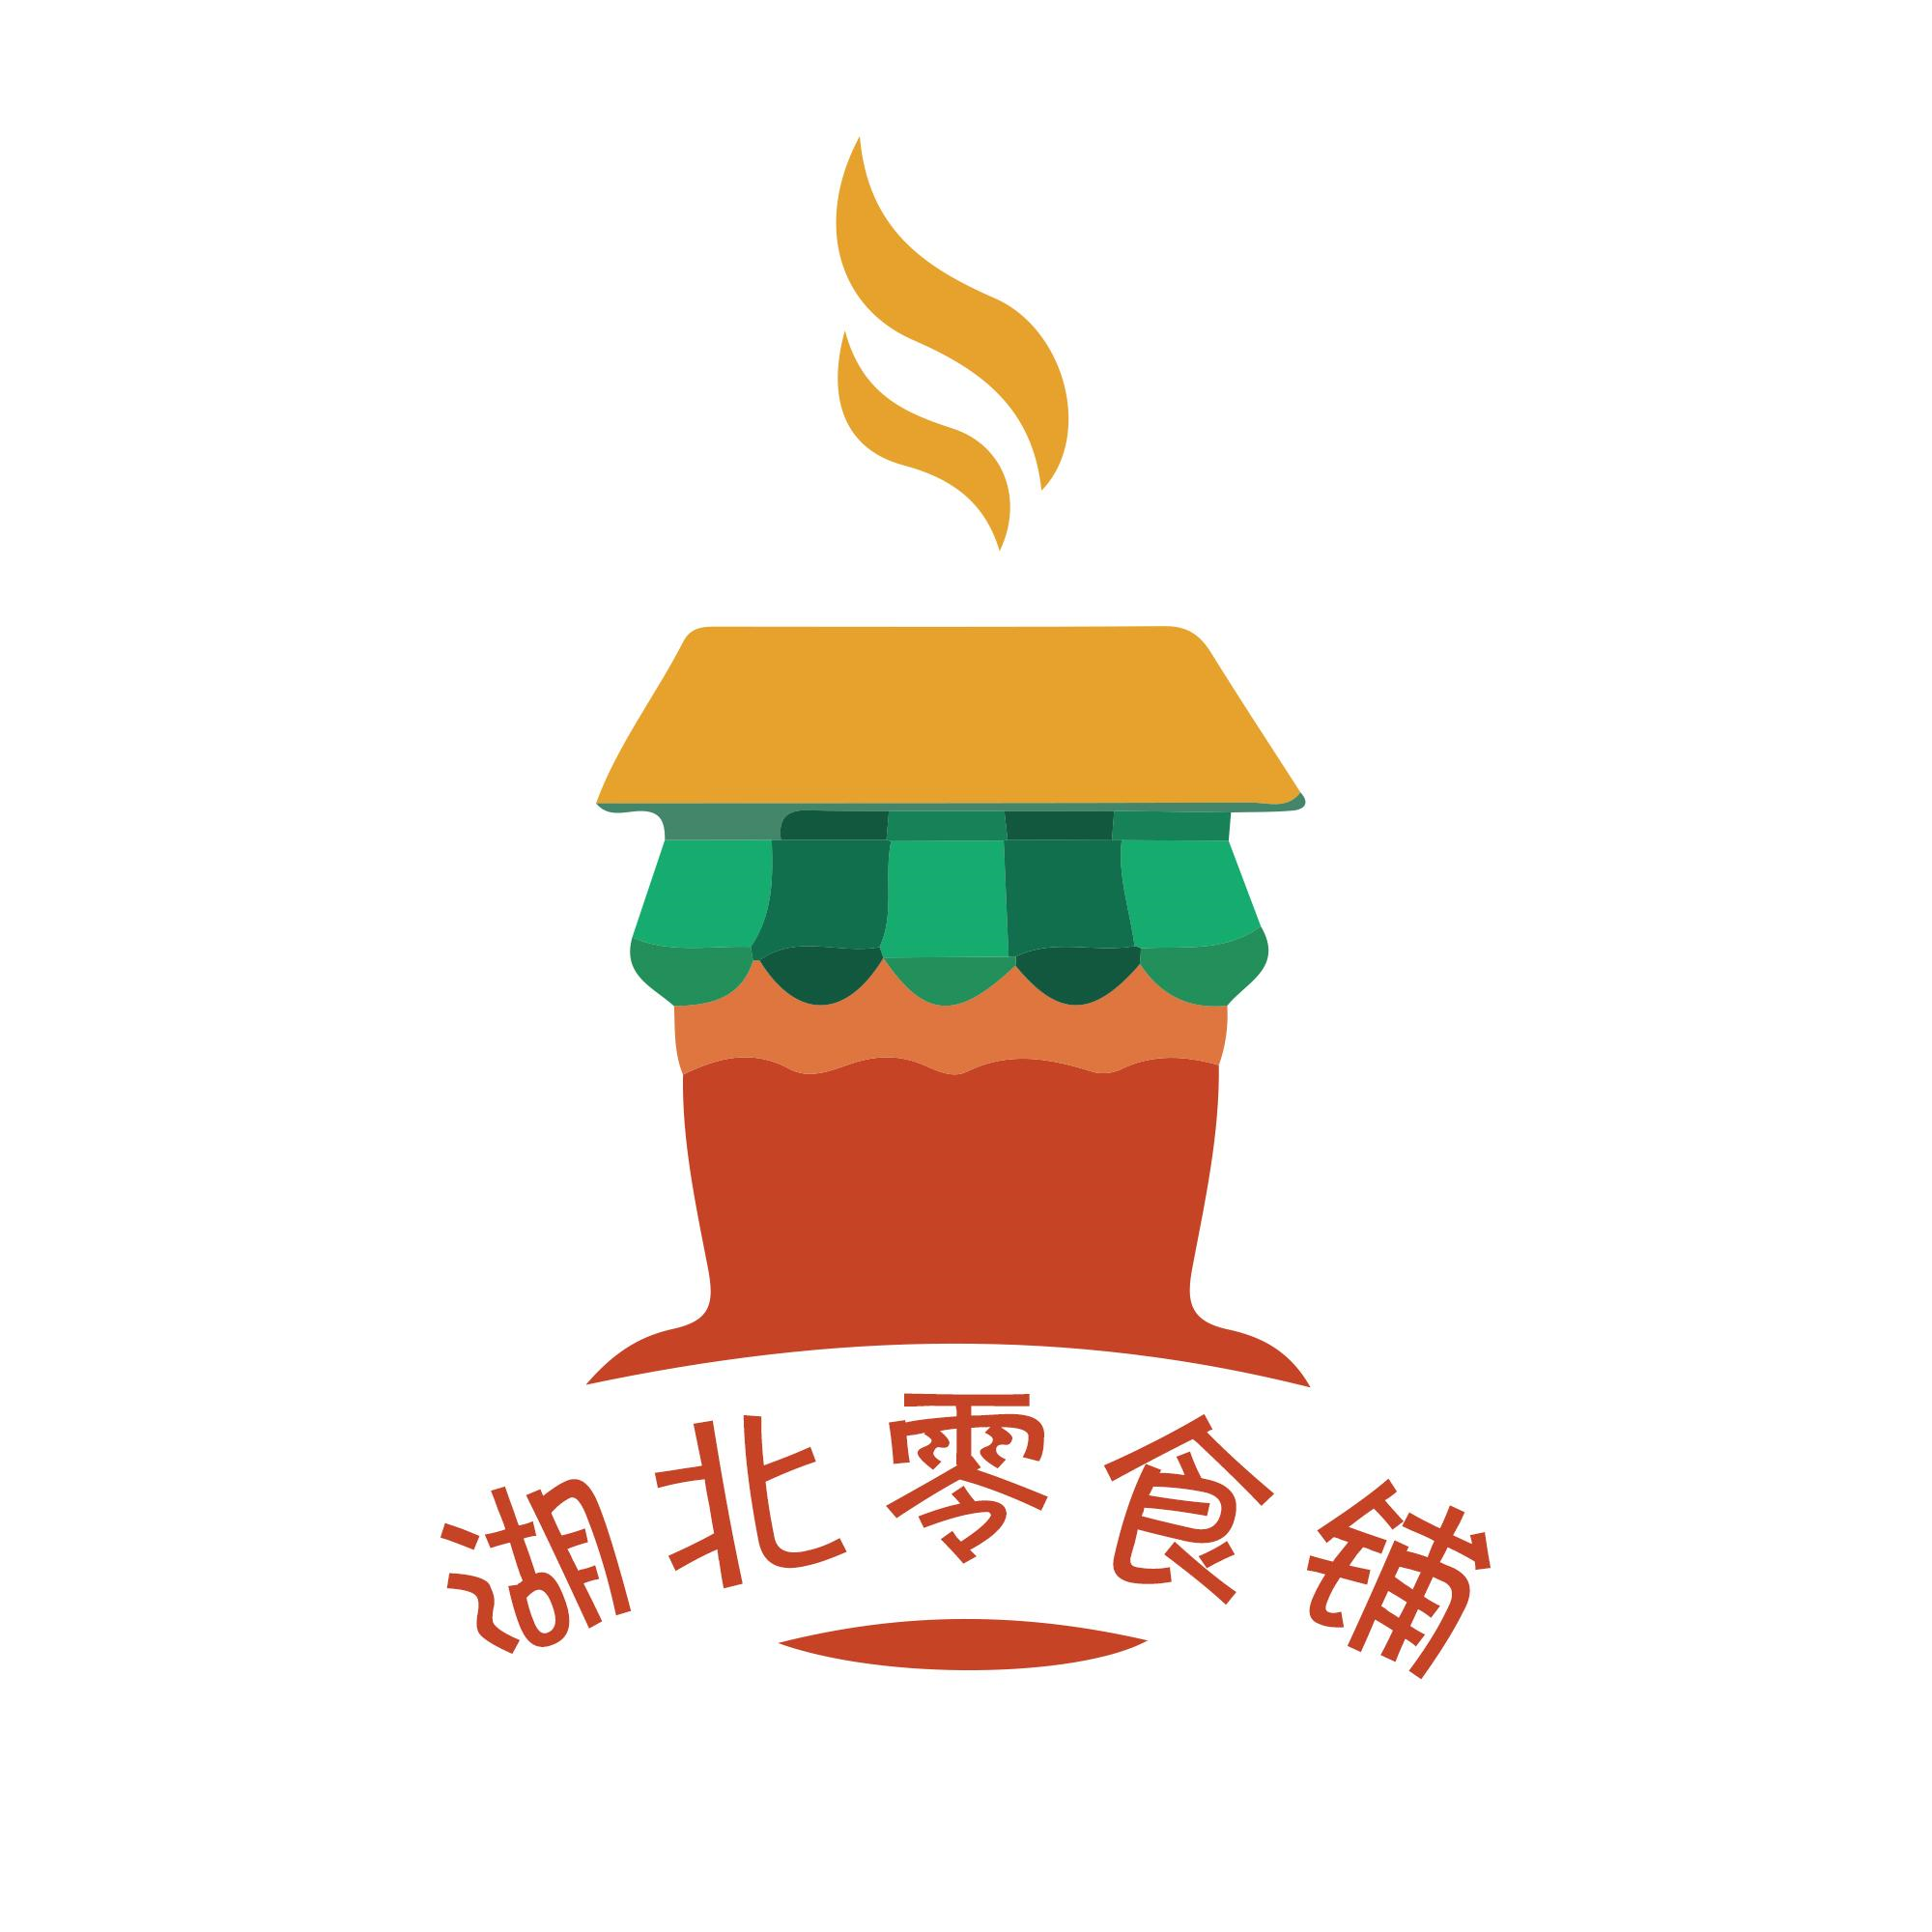 零食工坊 logo图片